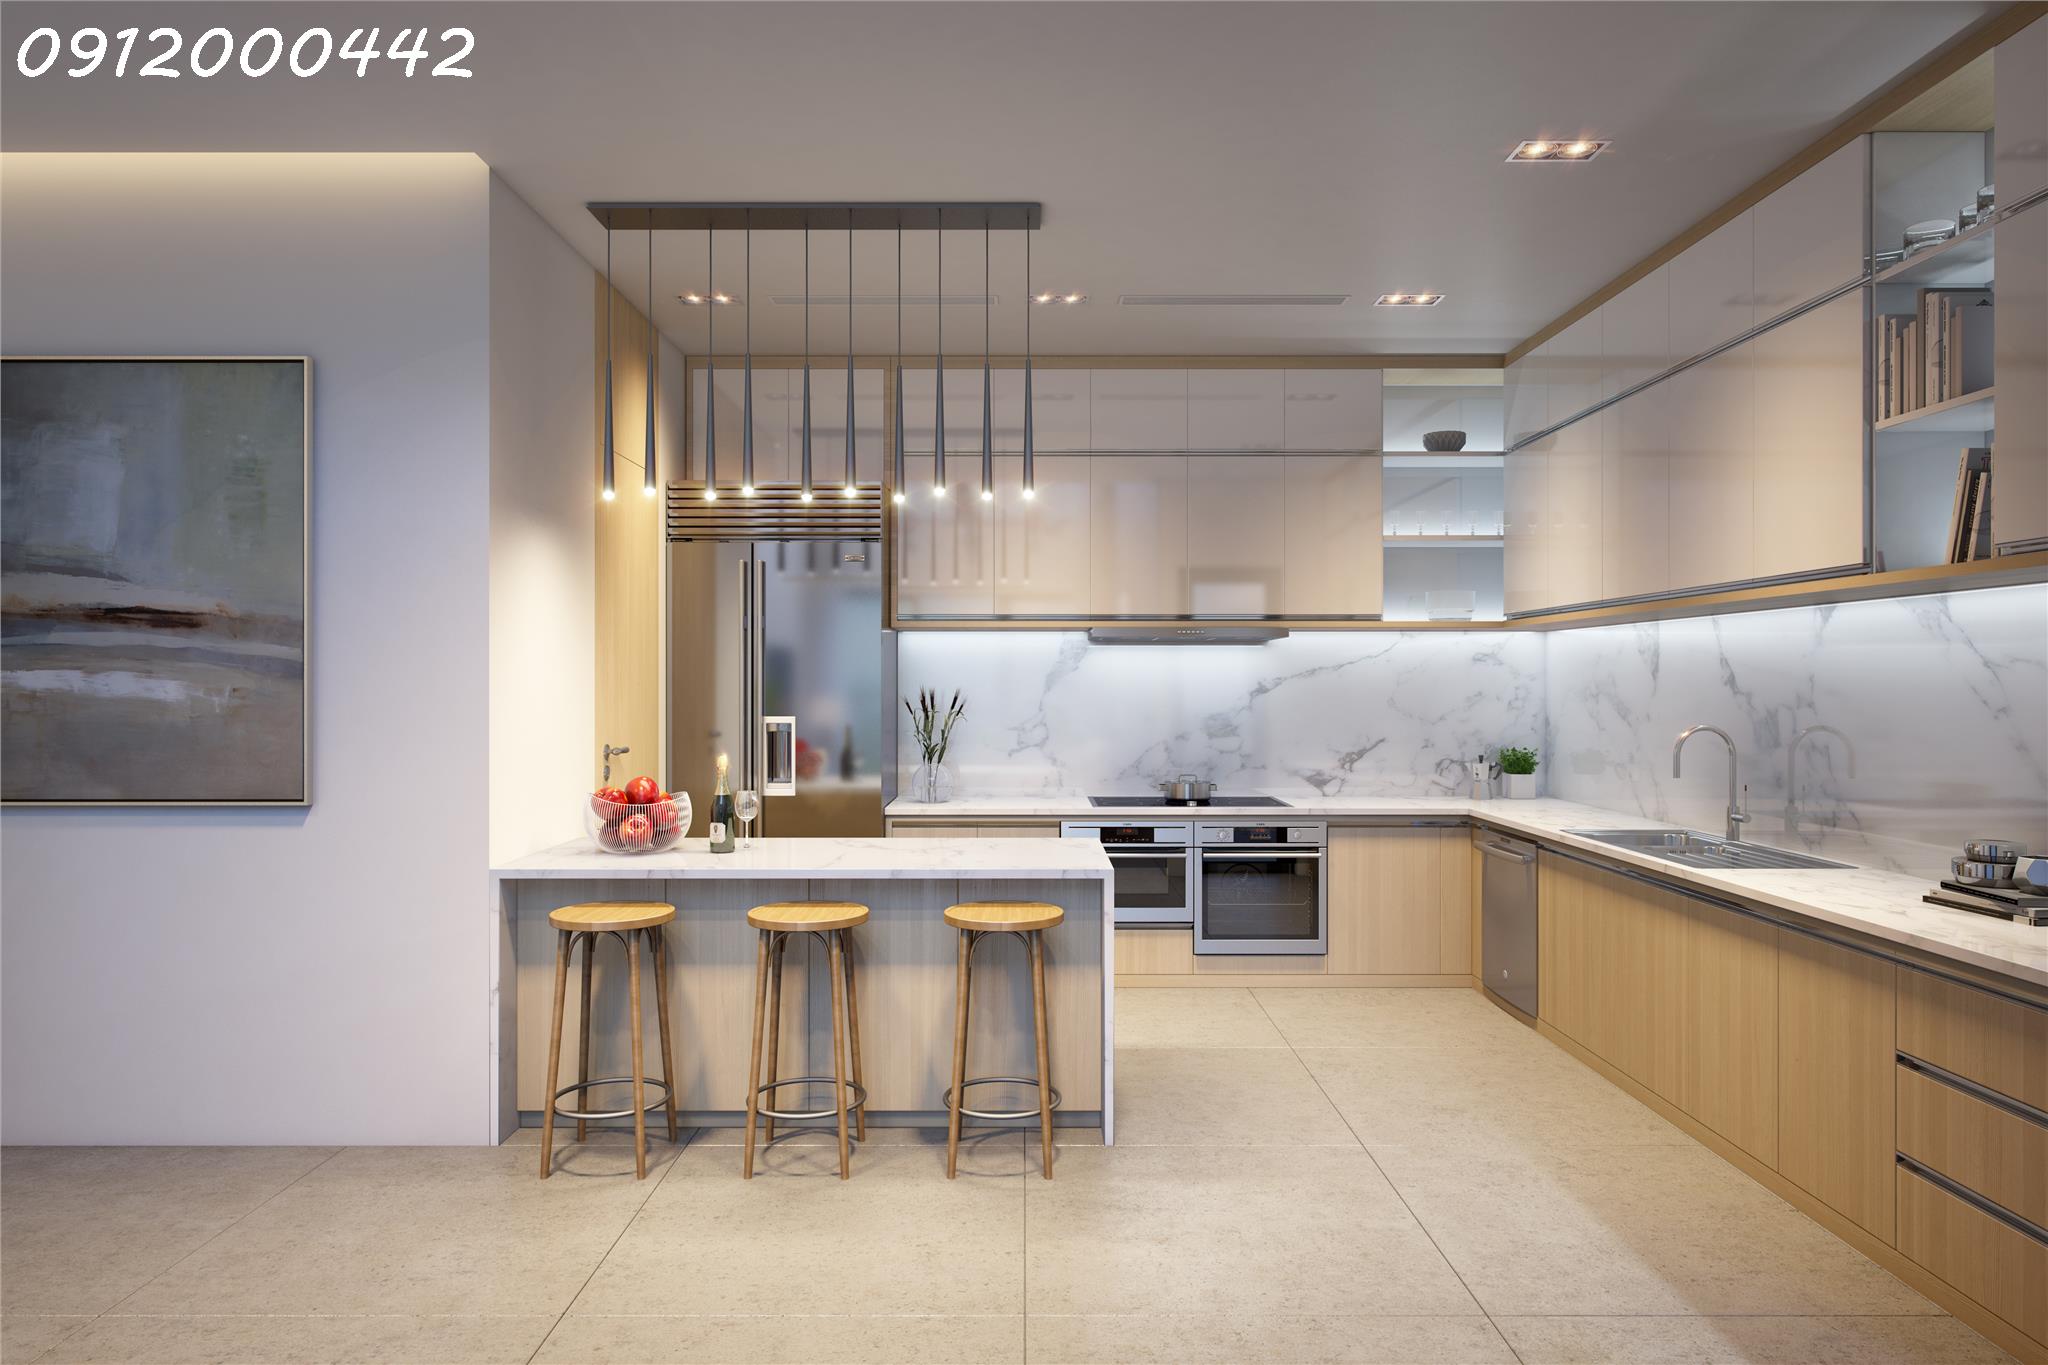 The Zei Mỹ Đình - Cam kết giá chính xác - căn hộ 94m2 thiết kế 2PN + 1 - nội thất full 3